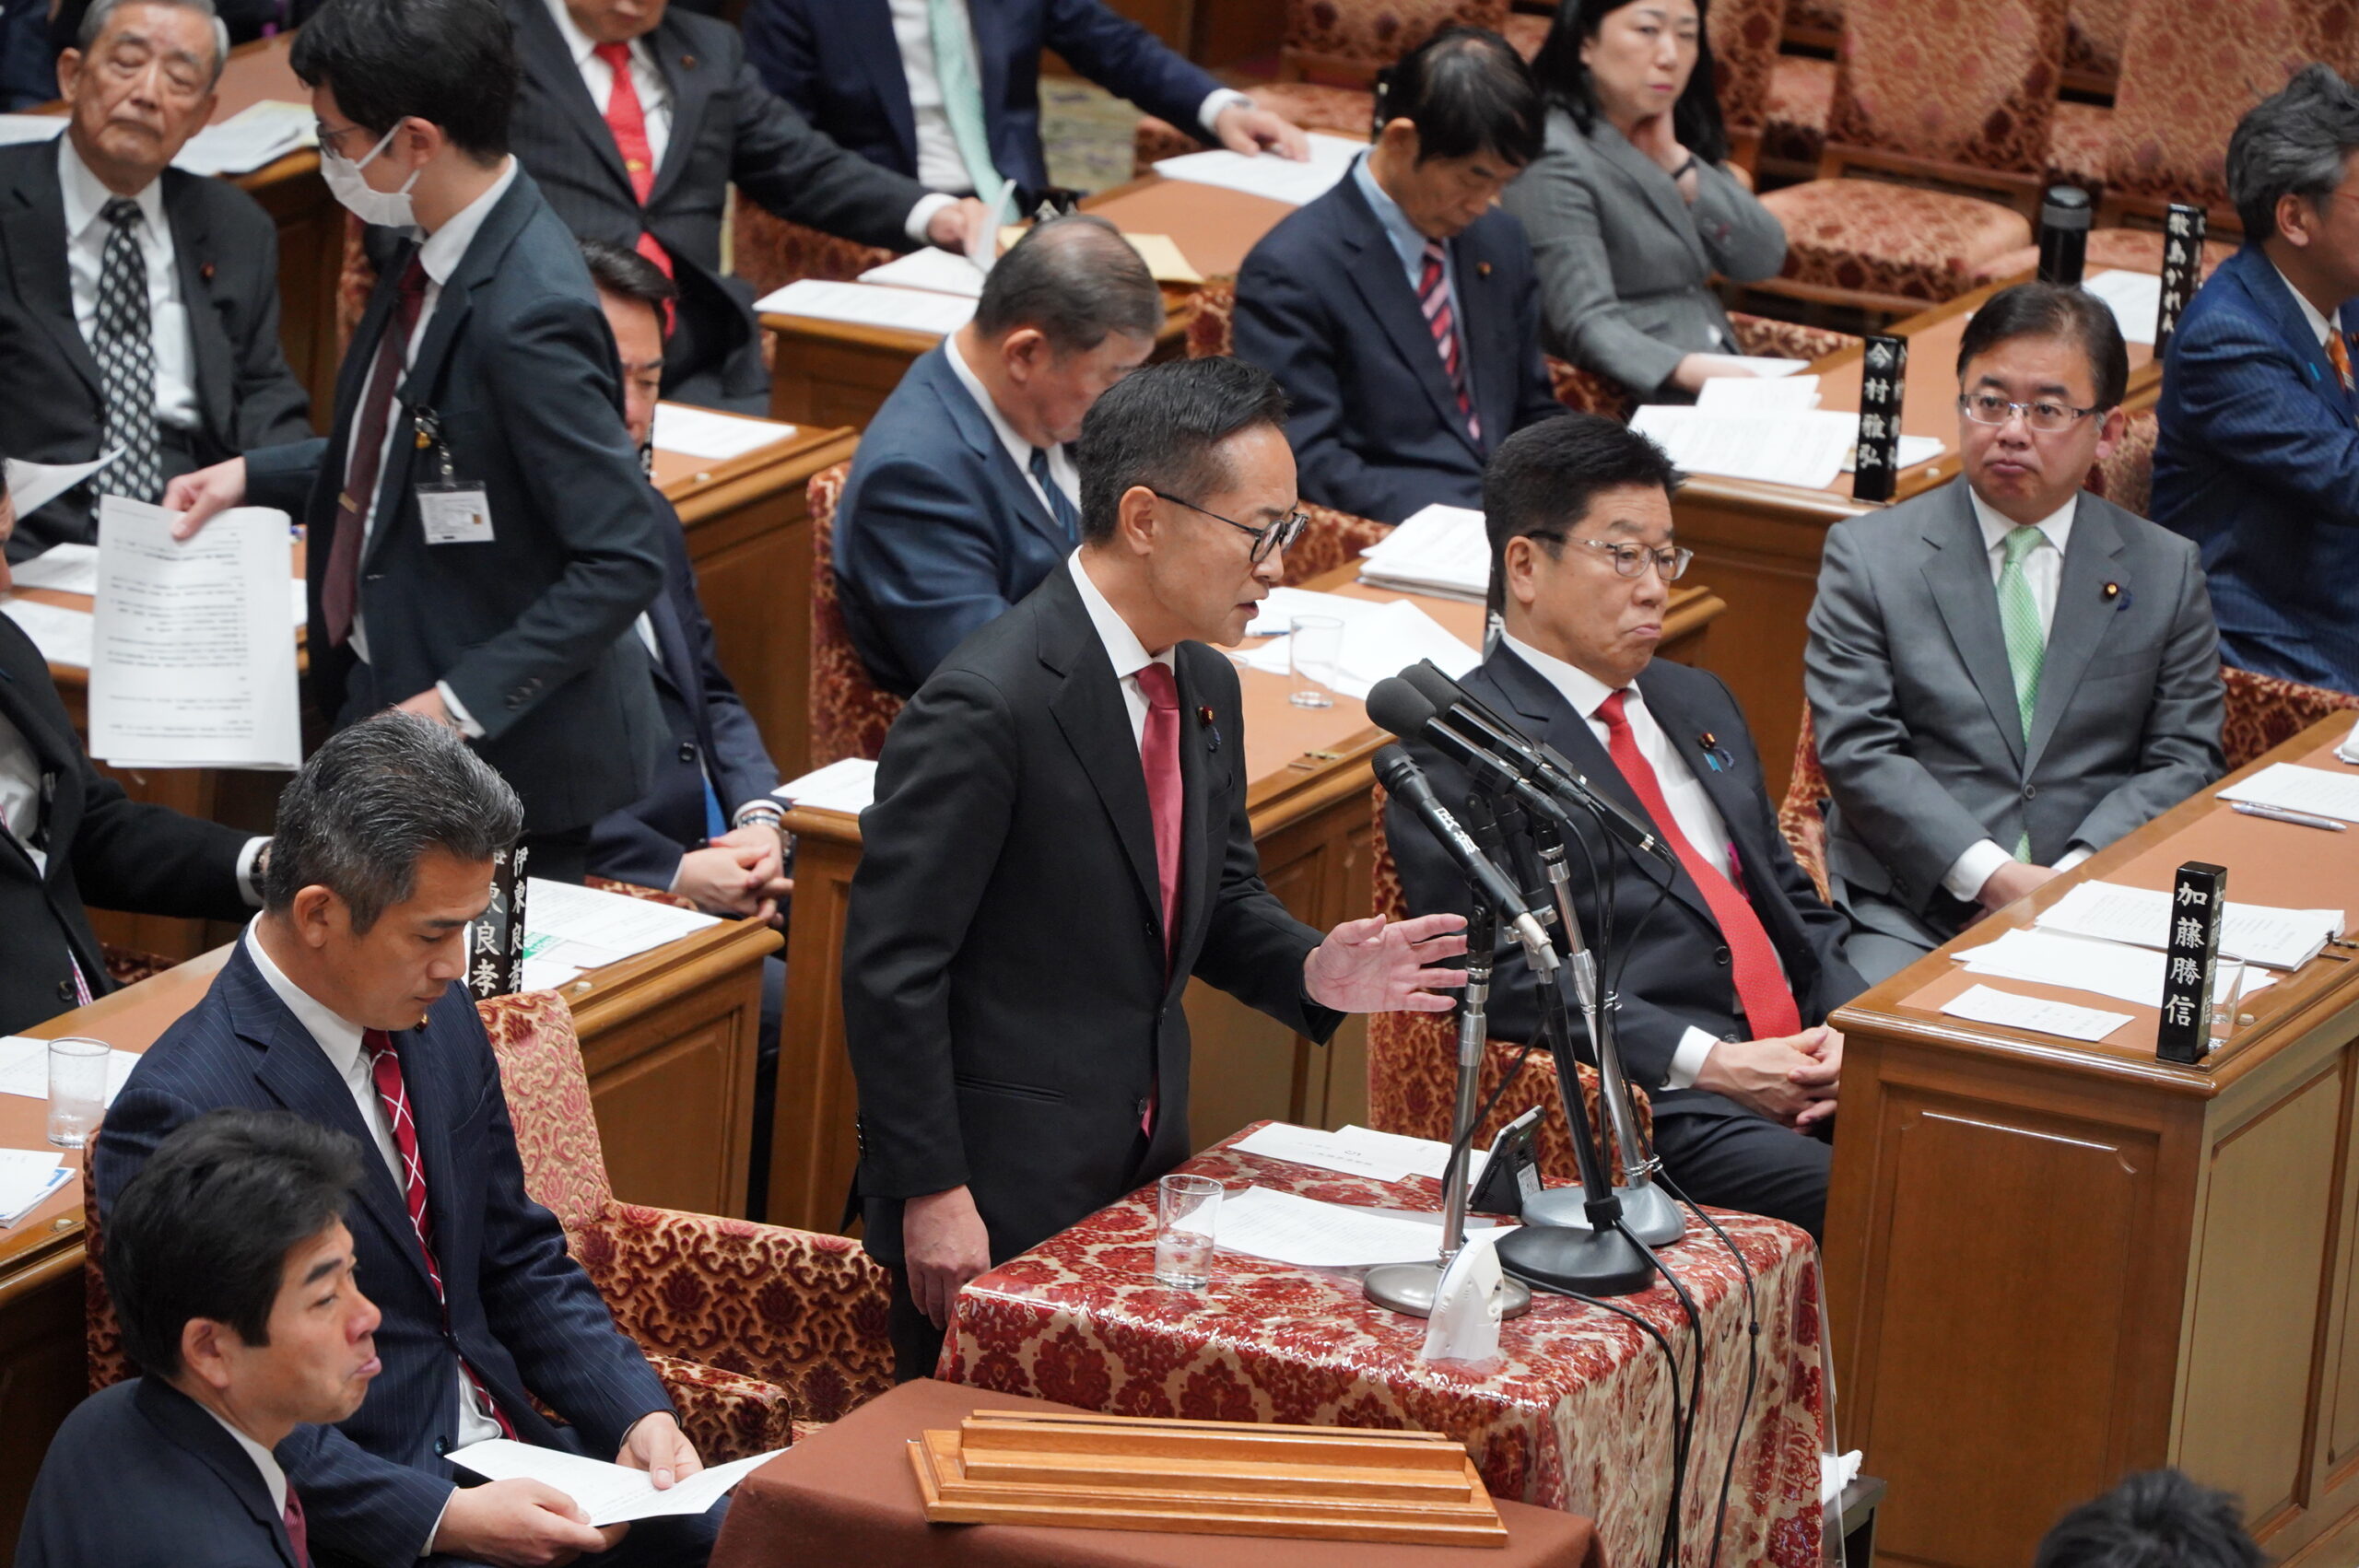 【衆予算委】古川元久国対委員長が政治資金問題などについて質疑